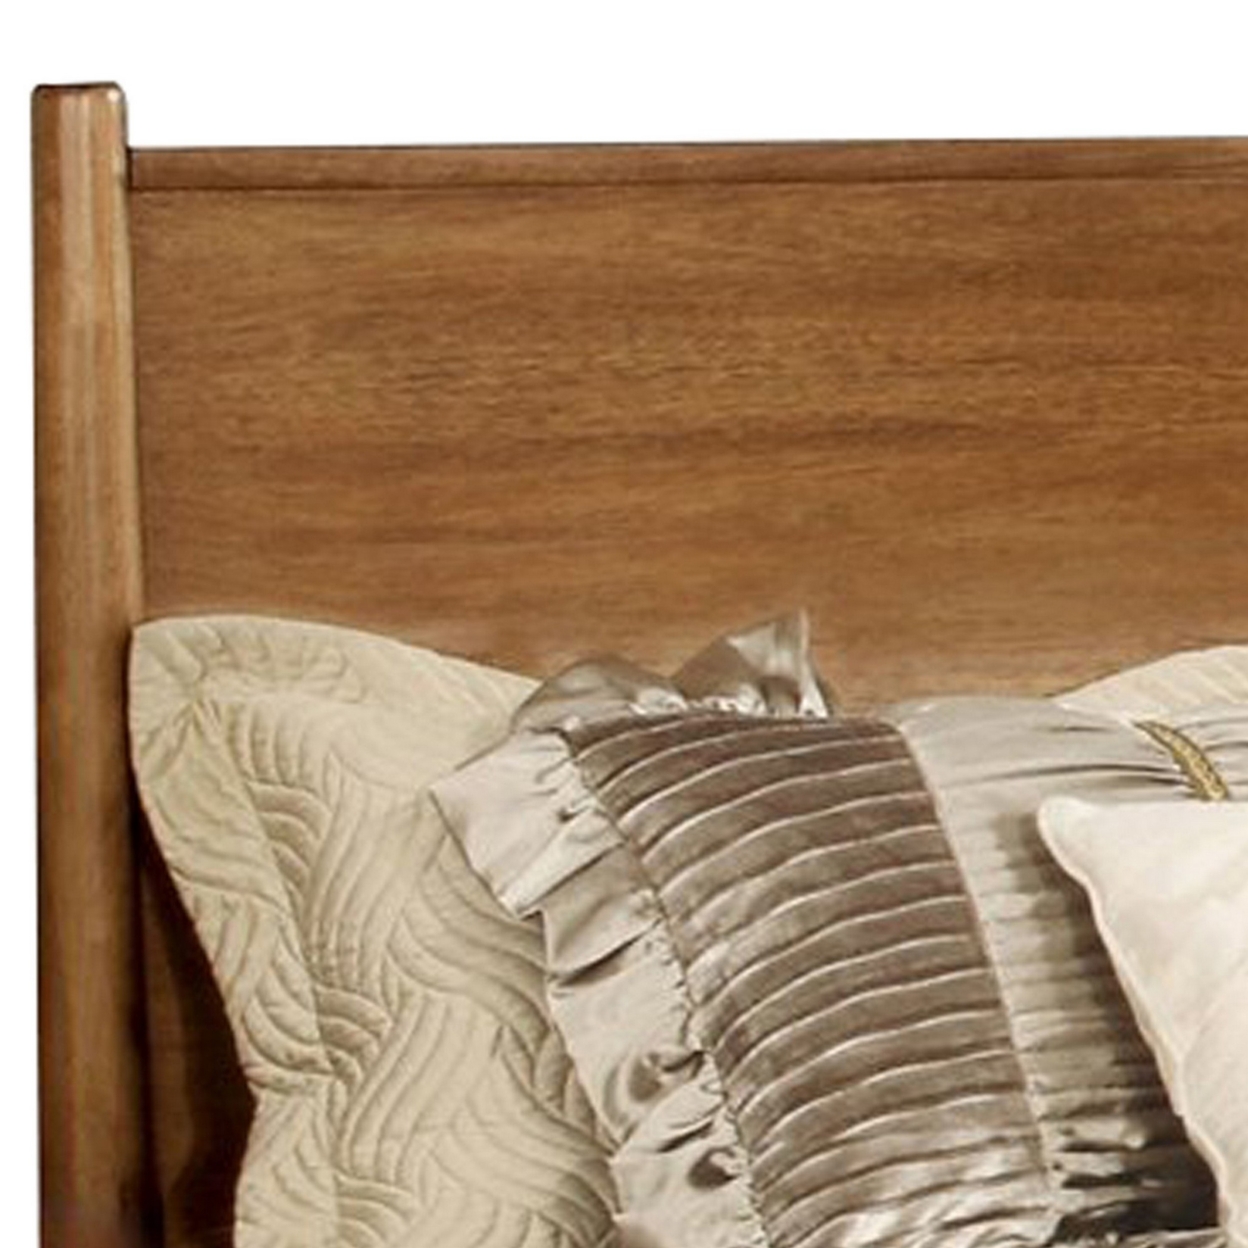 Wooden Eastern King Size Bed With Panel Headboard, Oak Brown- Saltoro Sherpi